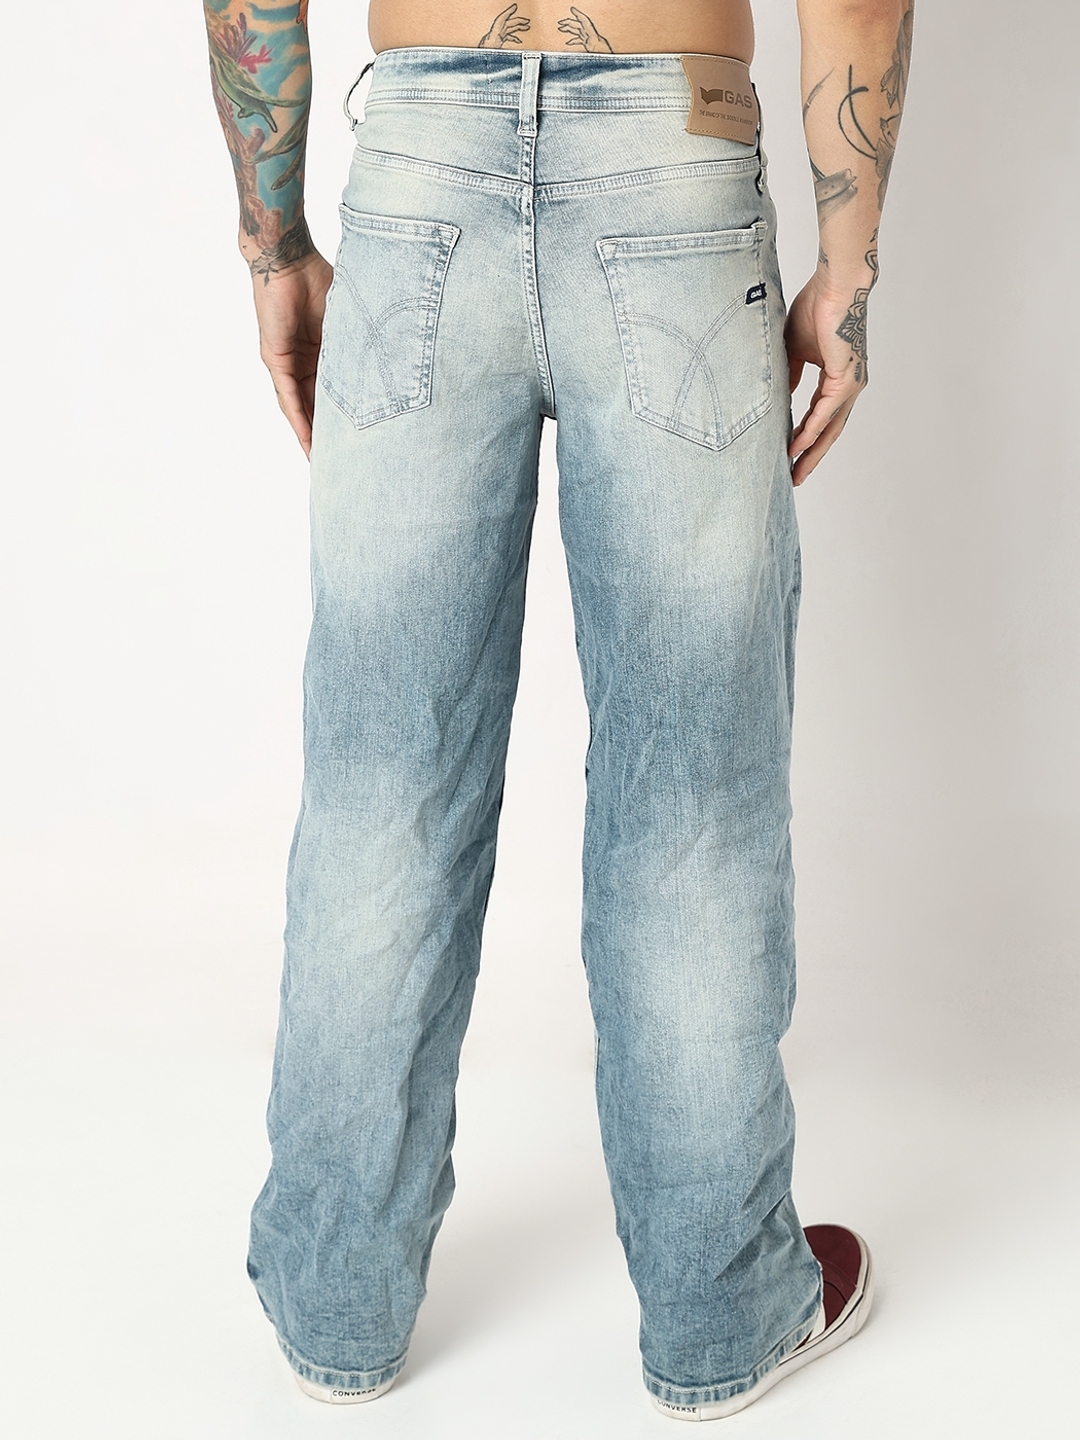 Denims: Buy Denim Clothing's Online for Men & Women | GAS Jeans